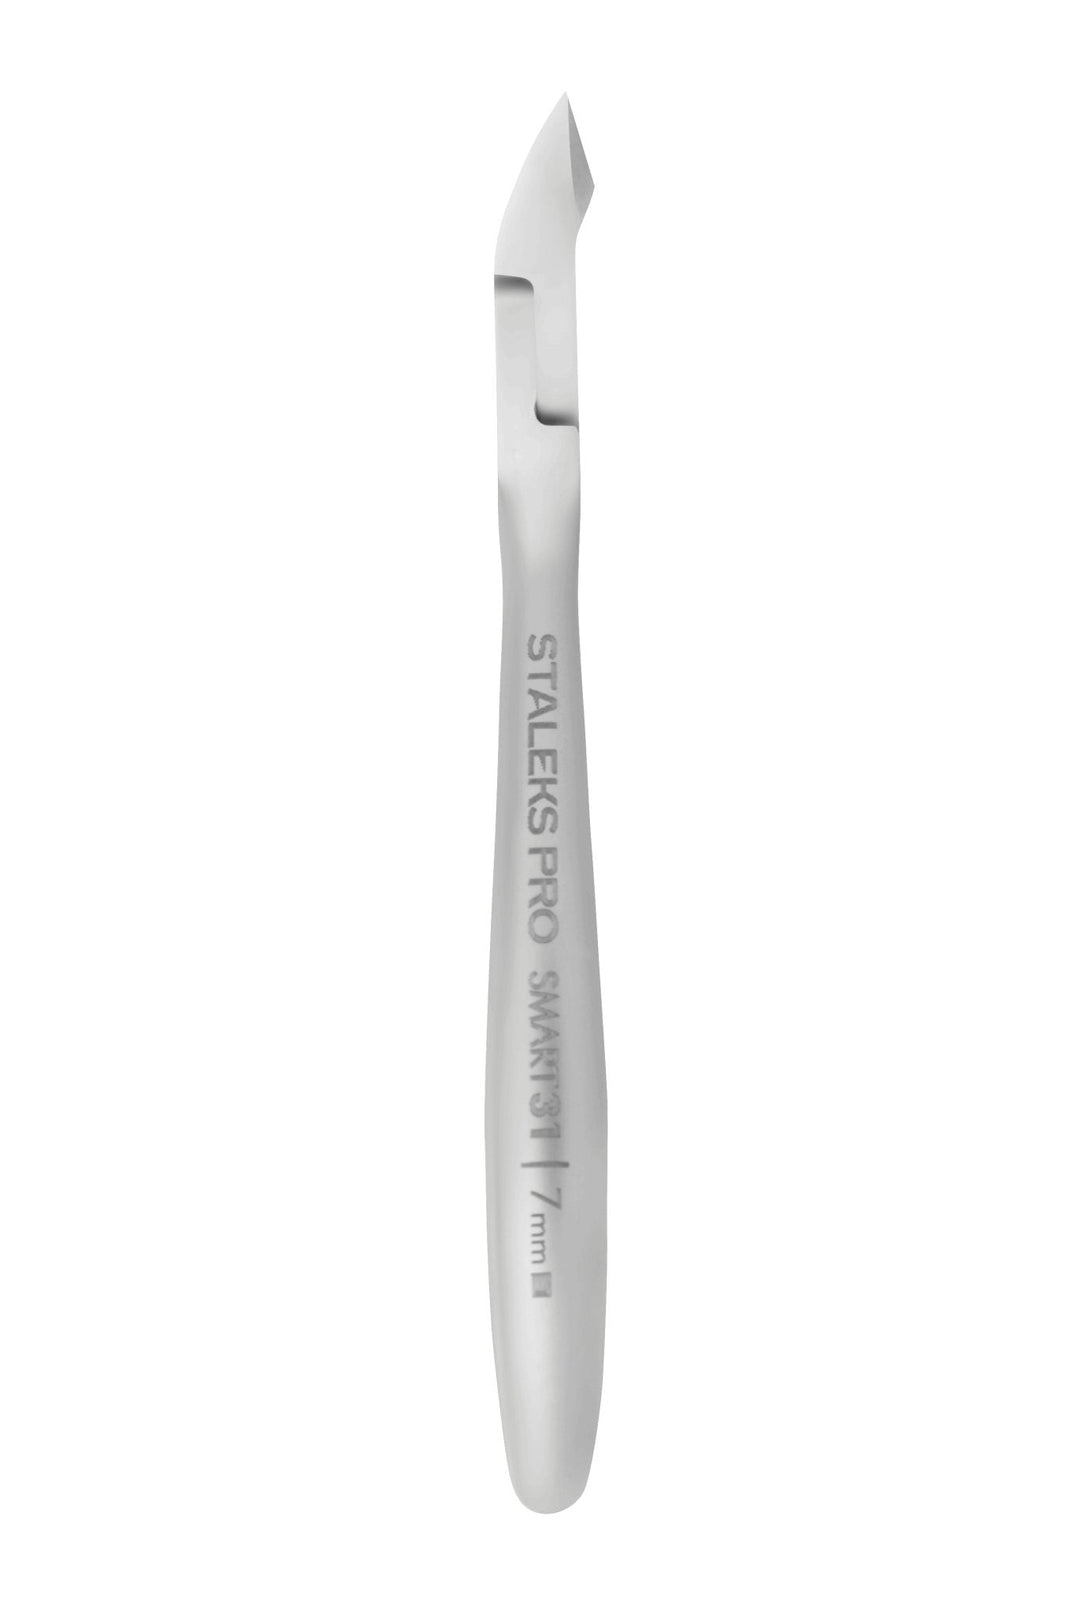 Staleks Cuticle Nipper  Smart 31 - 7 mm Jaw | U-tools